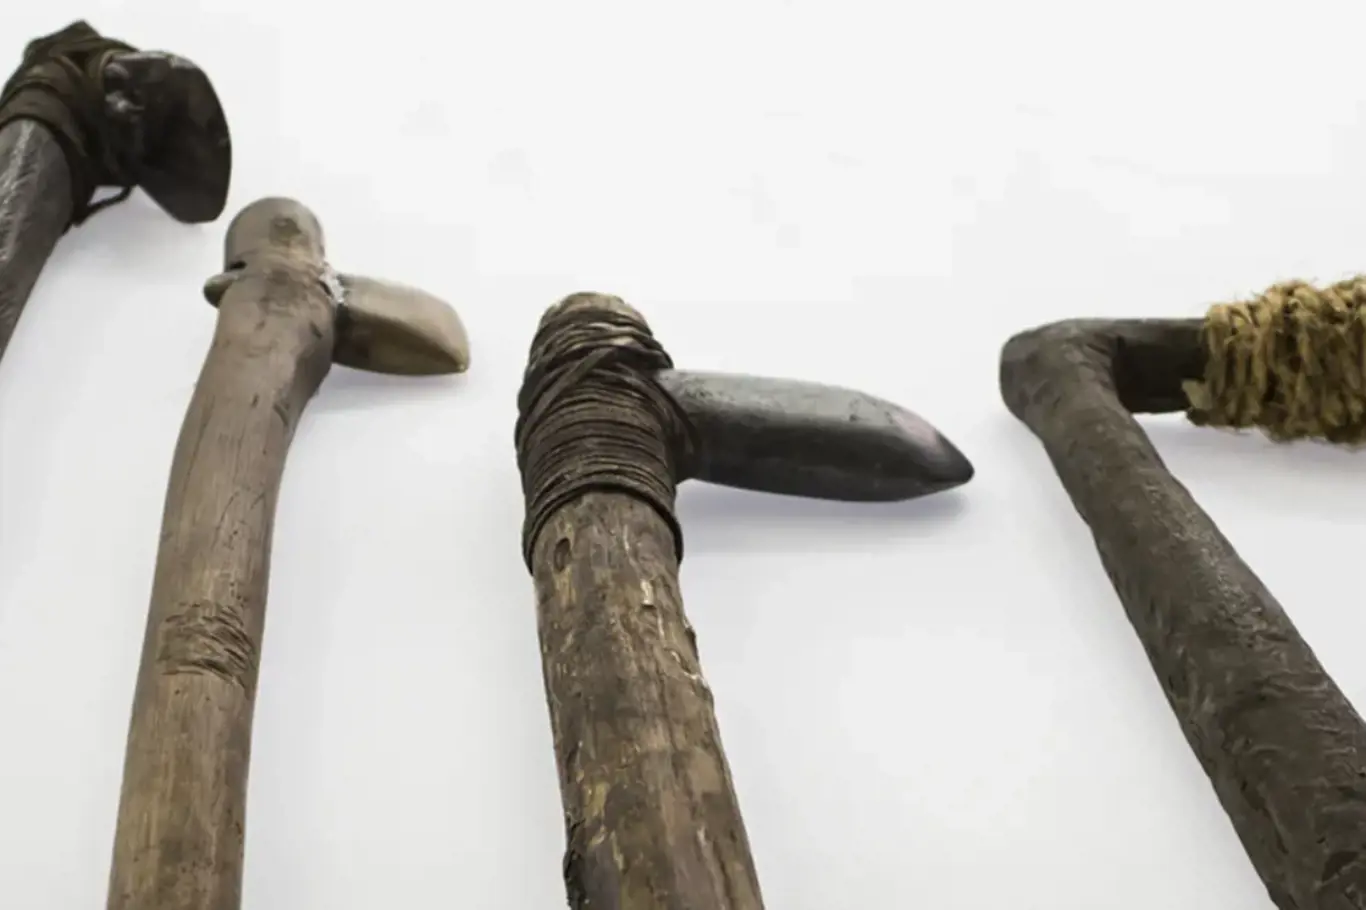 Sekery a sekeromlaty byly v neolitu běžnými nástroji a mohly sloužit i jako zbraně.